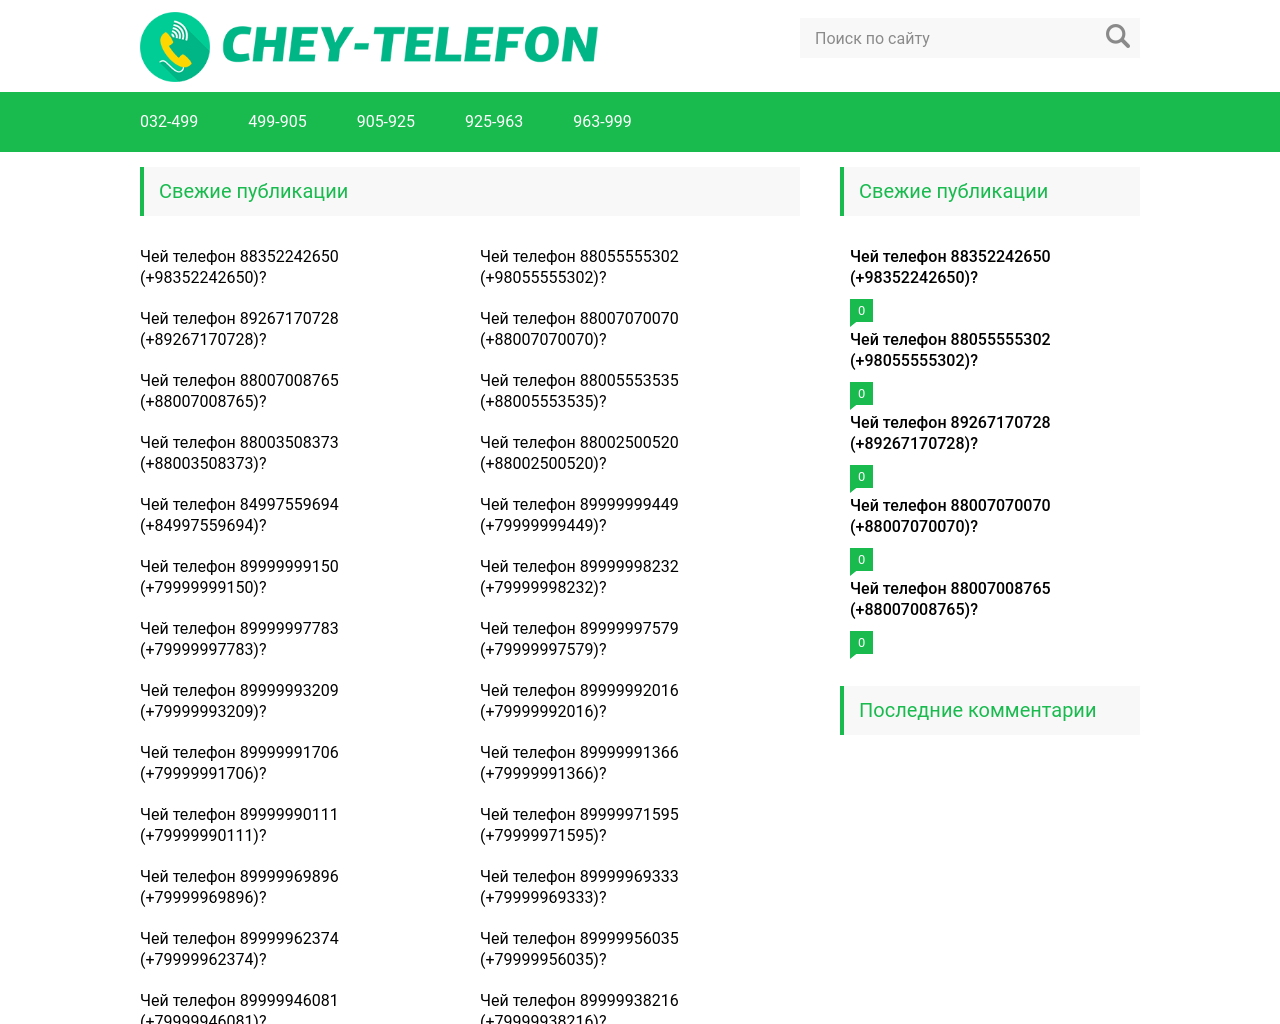 Изображение сайта chey-telefon.ru в разрешении 1280x1024